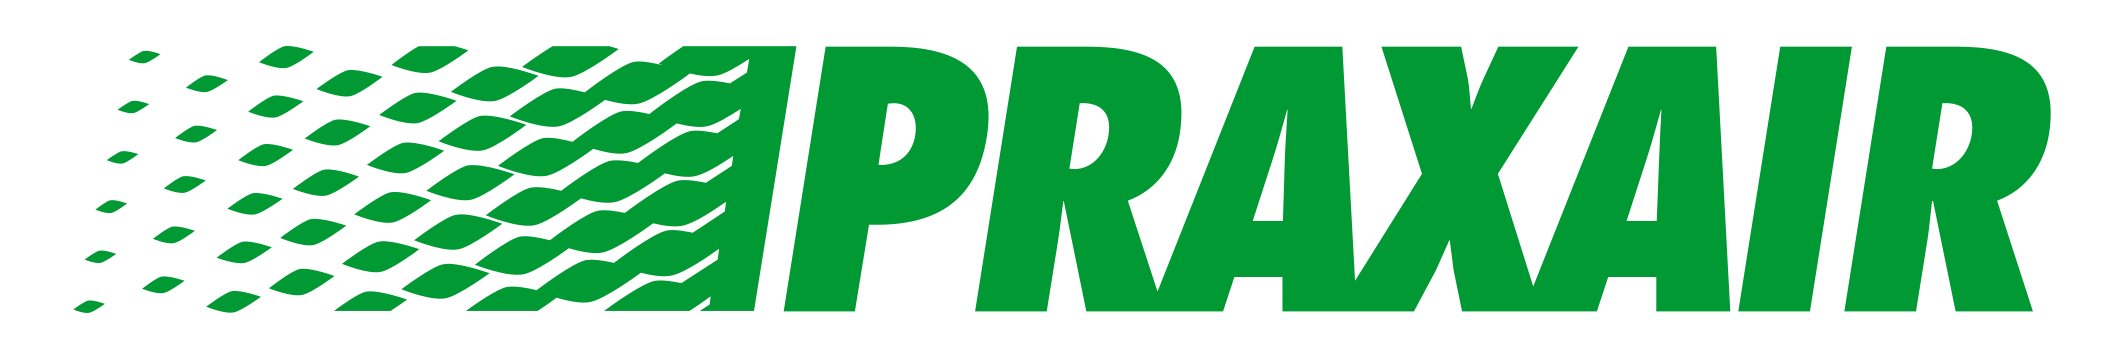 Praxair Logo PNG Image